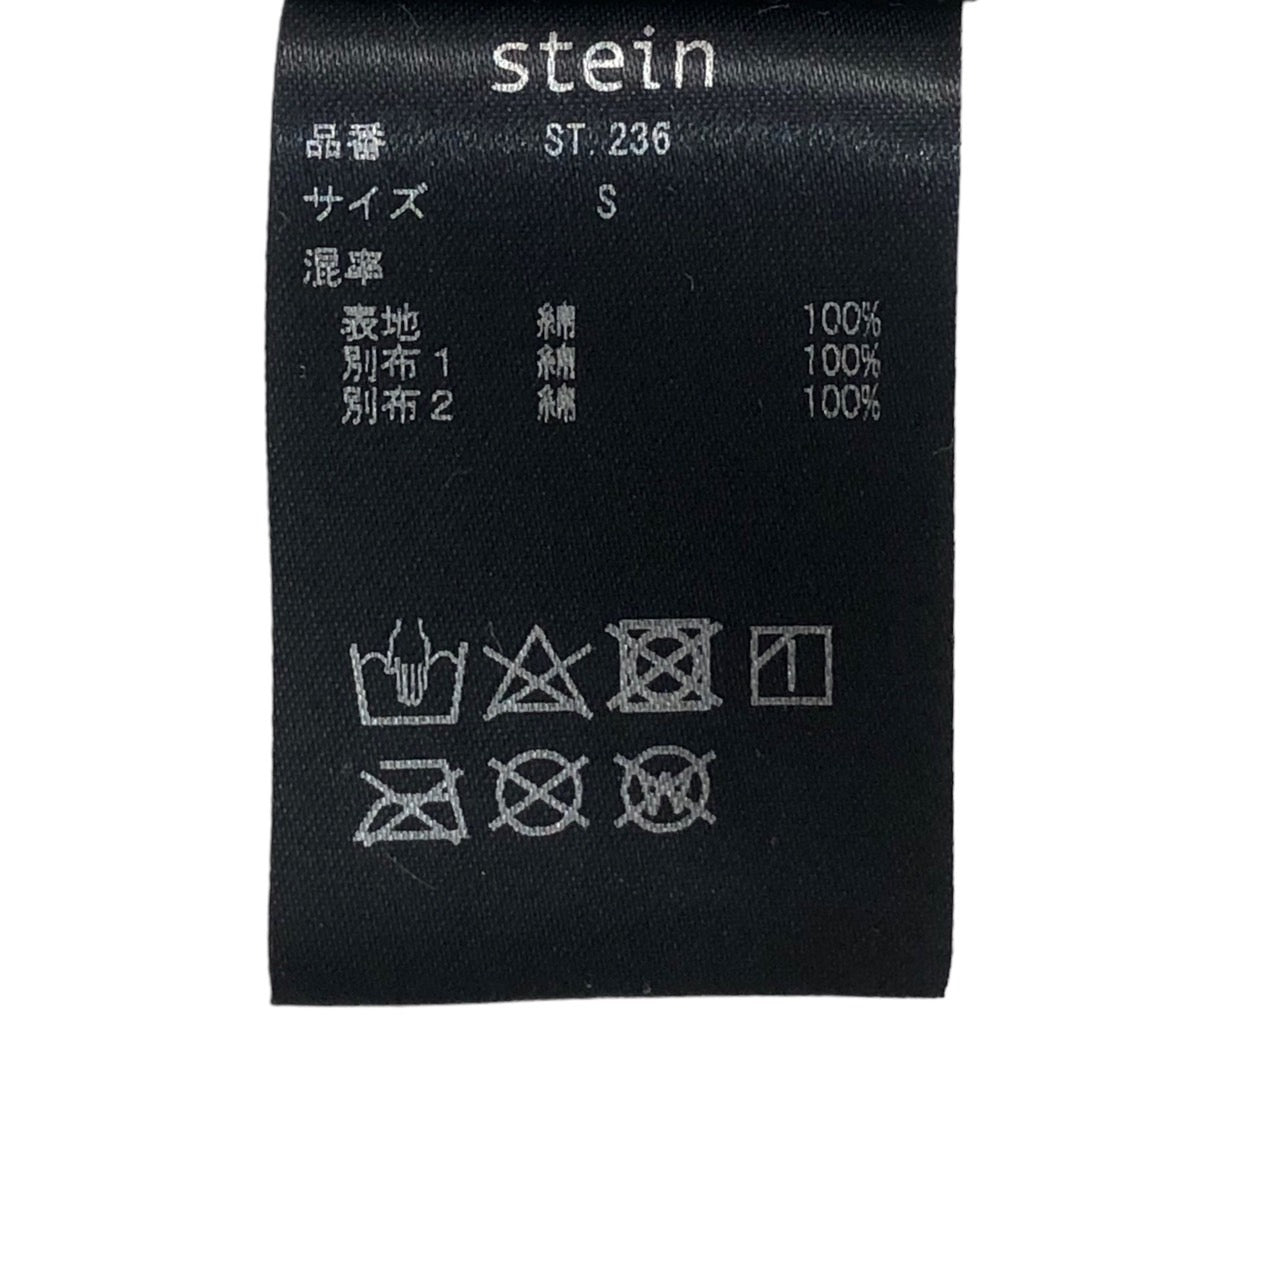 stein(シュタイン) OVERSIZED 4LAYERED SHIRT/オーバーサイズ4レイヤードシャツ ST.236 S ホワイト×ベージュ/ストライプ